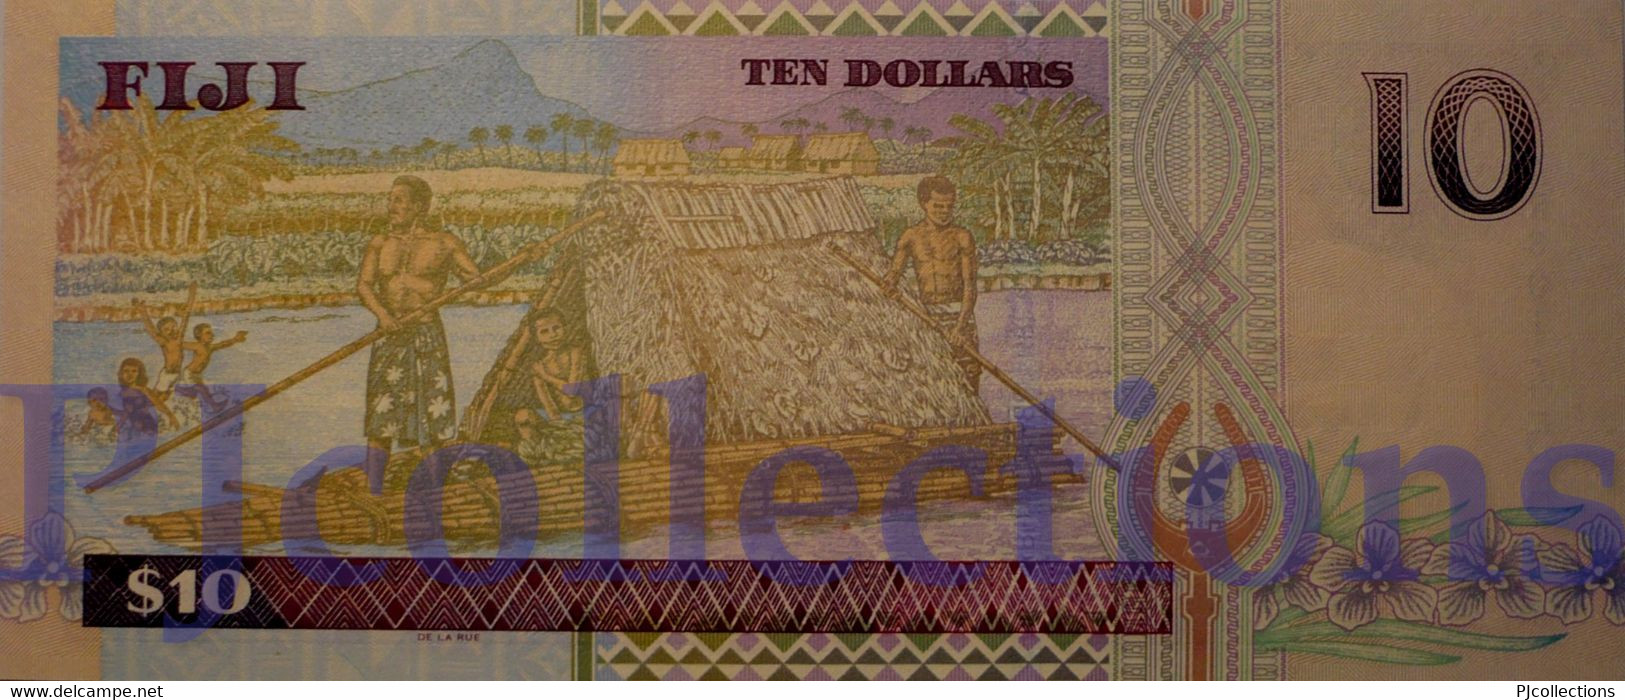 FIJI 10 DOLLARS 2002 PICK 106a UNC - Fidschi